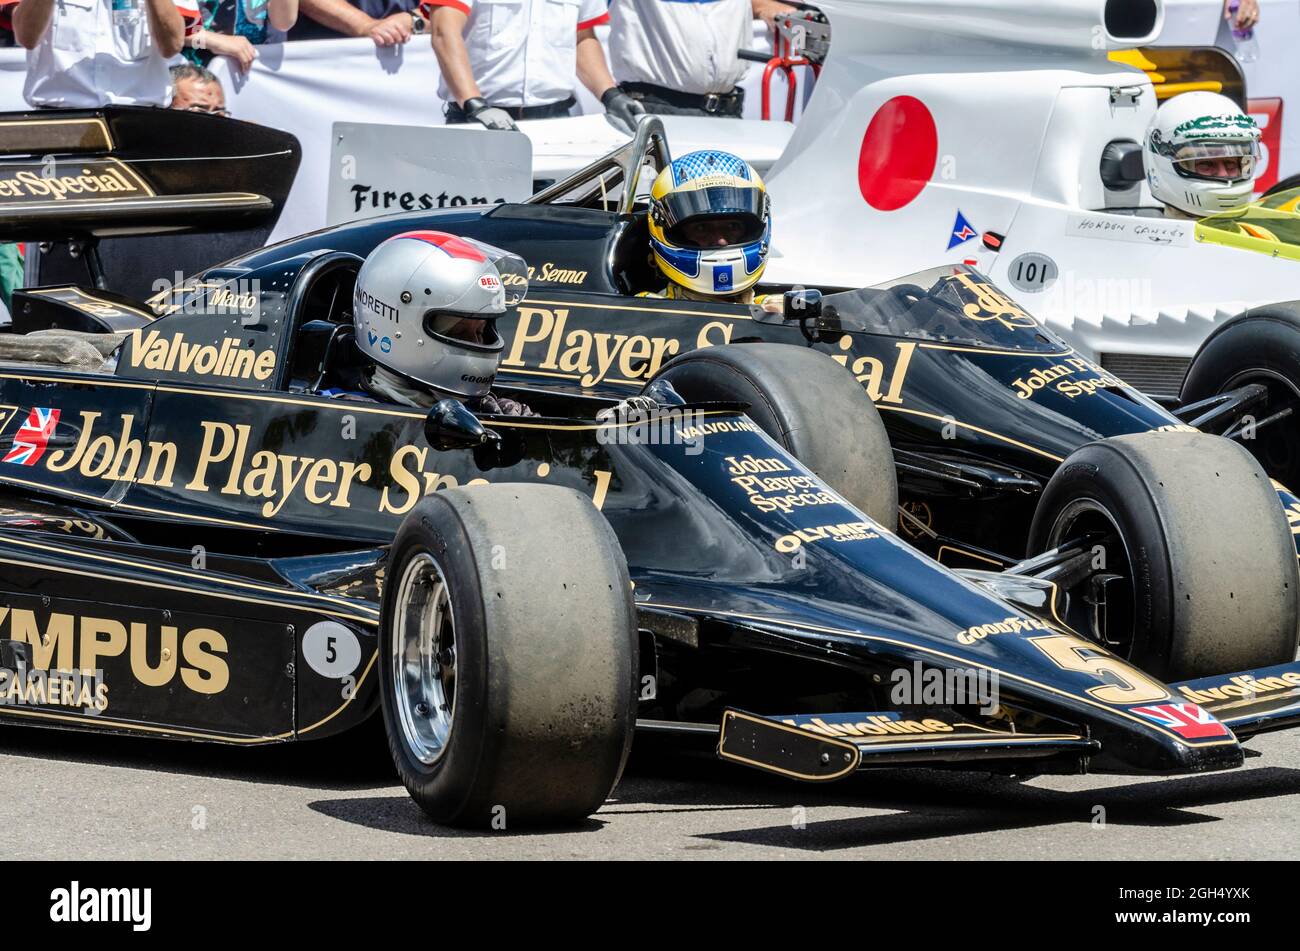 Voiture de course Lotus 79 et 97 de Formule 1 au quai du Goodwood Festival of Speed 2014. Voiture Mario Andretti, avec voiture Senna Banque D'Images